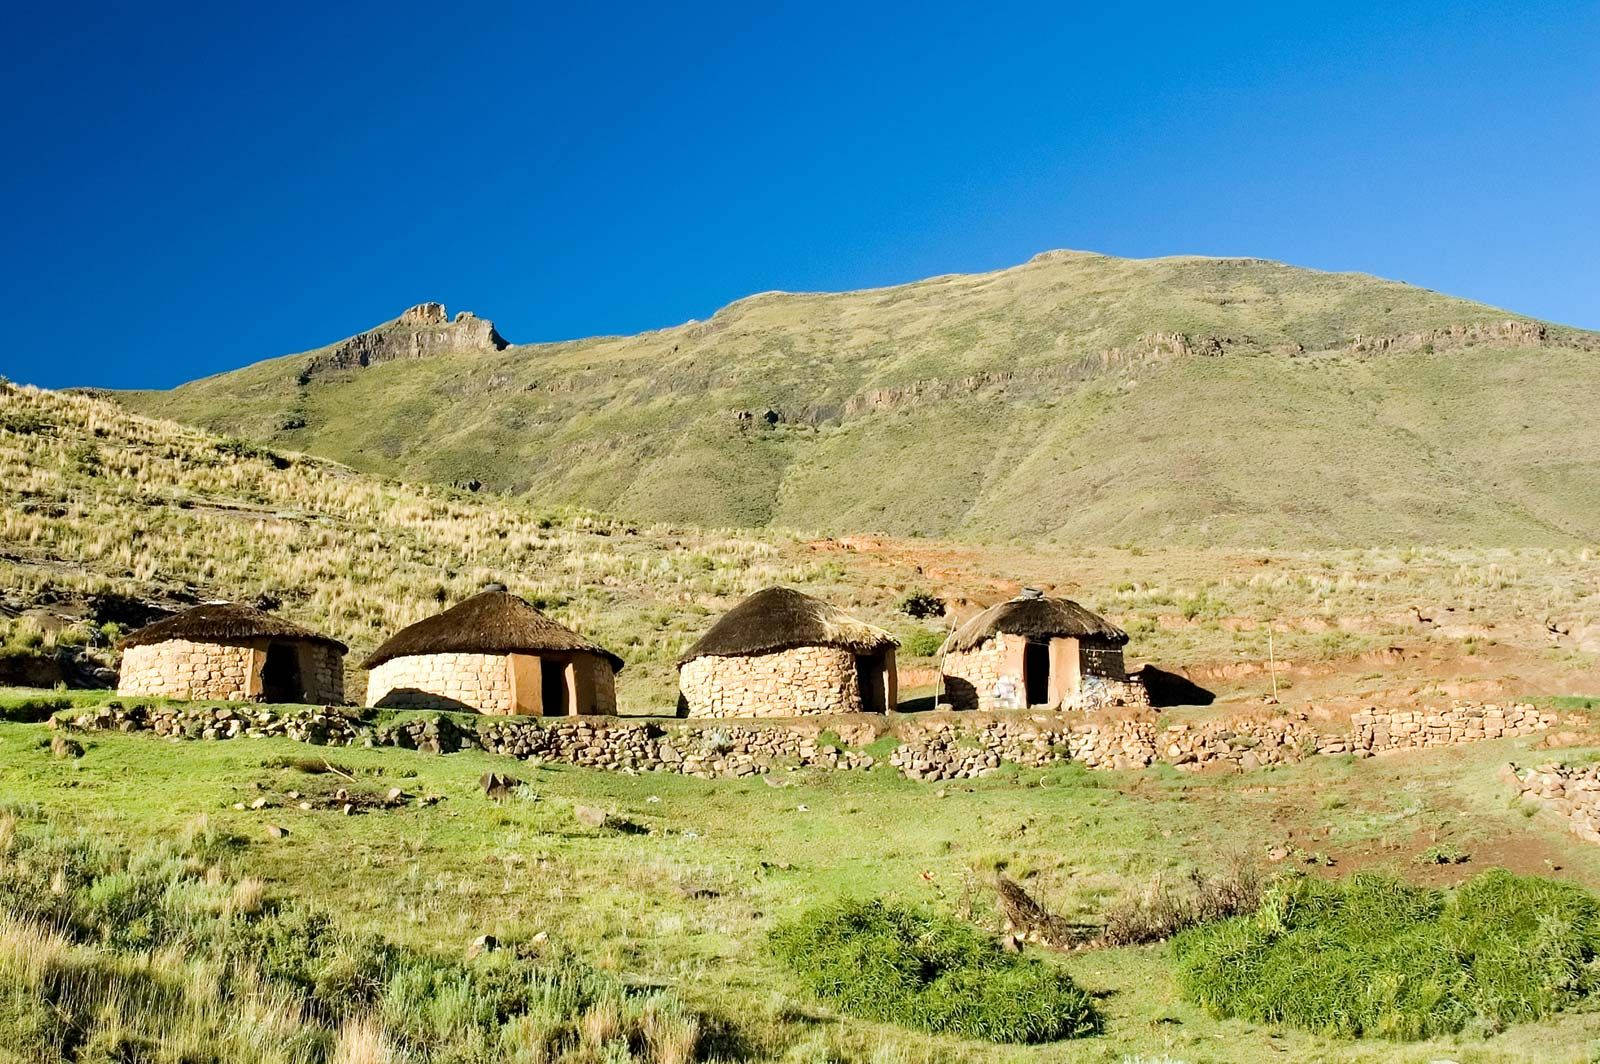 Papelde Parede Para Computador Ou Celular: Montanha De Casas De Pedra Em Lesoto. Papel de Parede